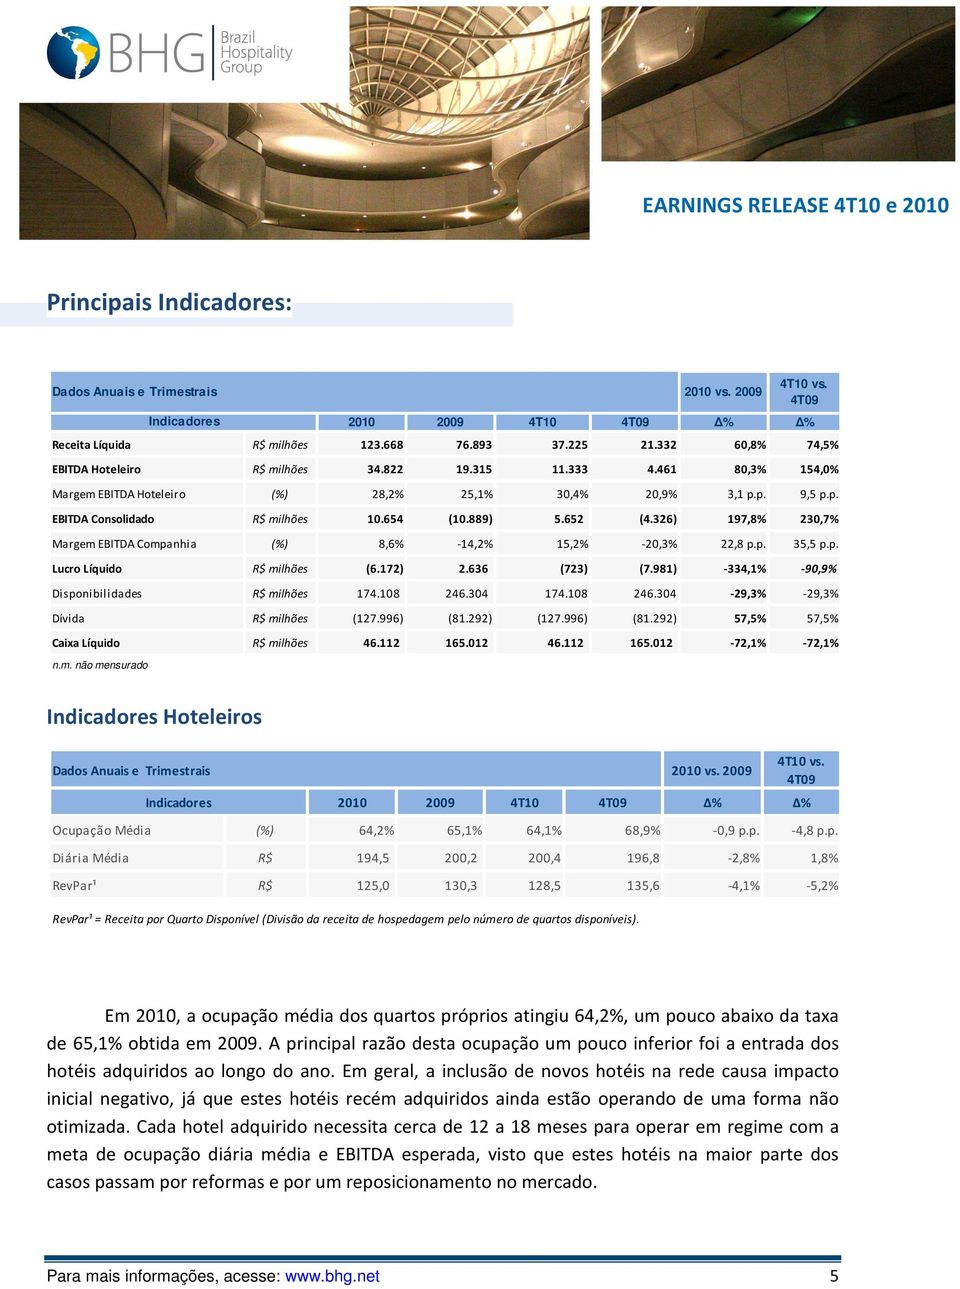 326) 197,8% 230,7% Margem EBITDA Companhia (%) 8,6% -14,2% 15,2% -20,3% 22,8 p.p. 35,5 p.p. Lucro Líquido R$ milhões (6.172) 2.636 (723) (7.981) -334,1% -90,9% Disponibilidades R$ milhões 174.108 246.